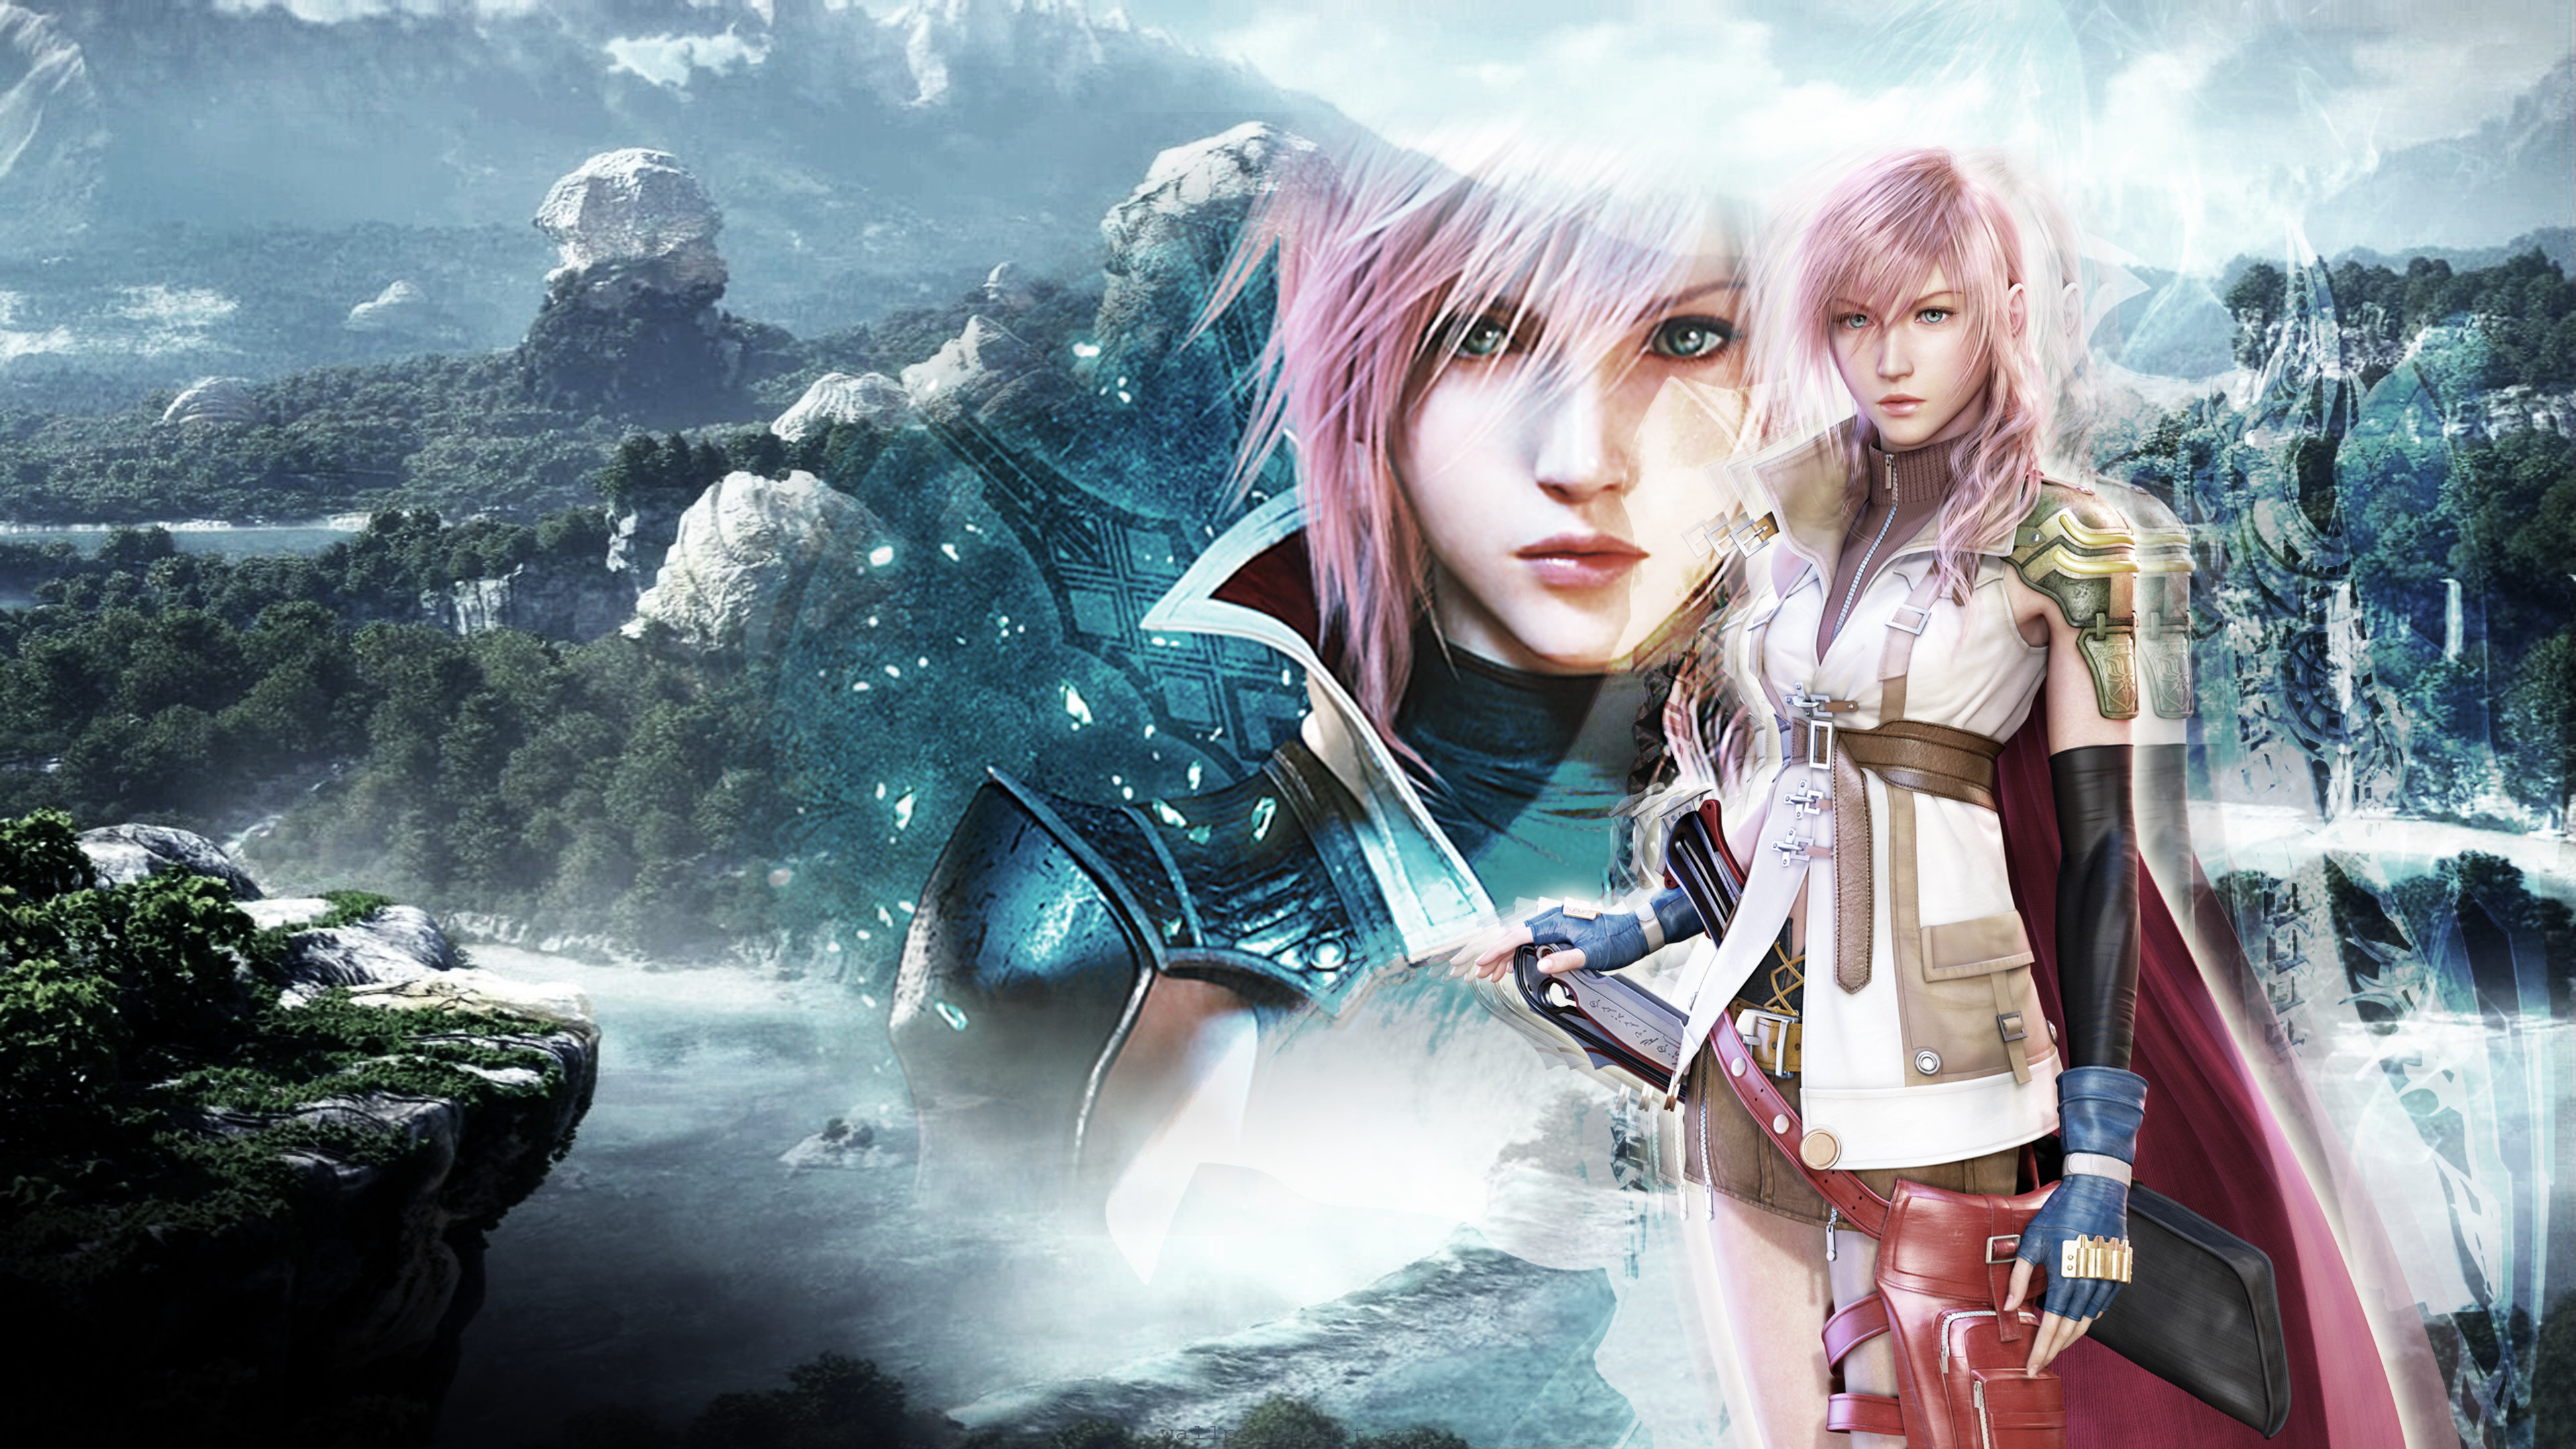 Lightning Final Fantasy Wallpaper Image